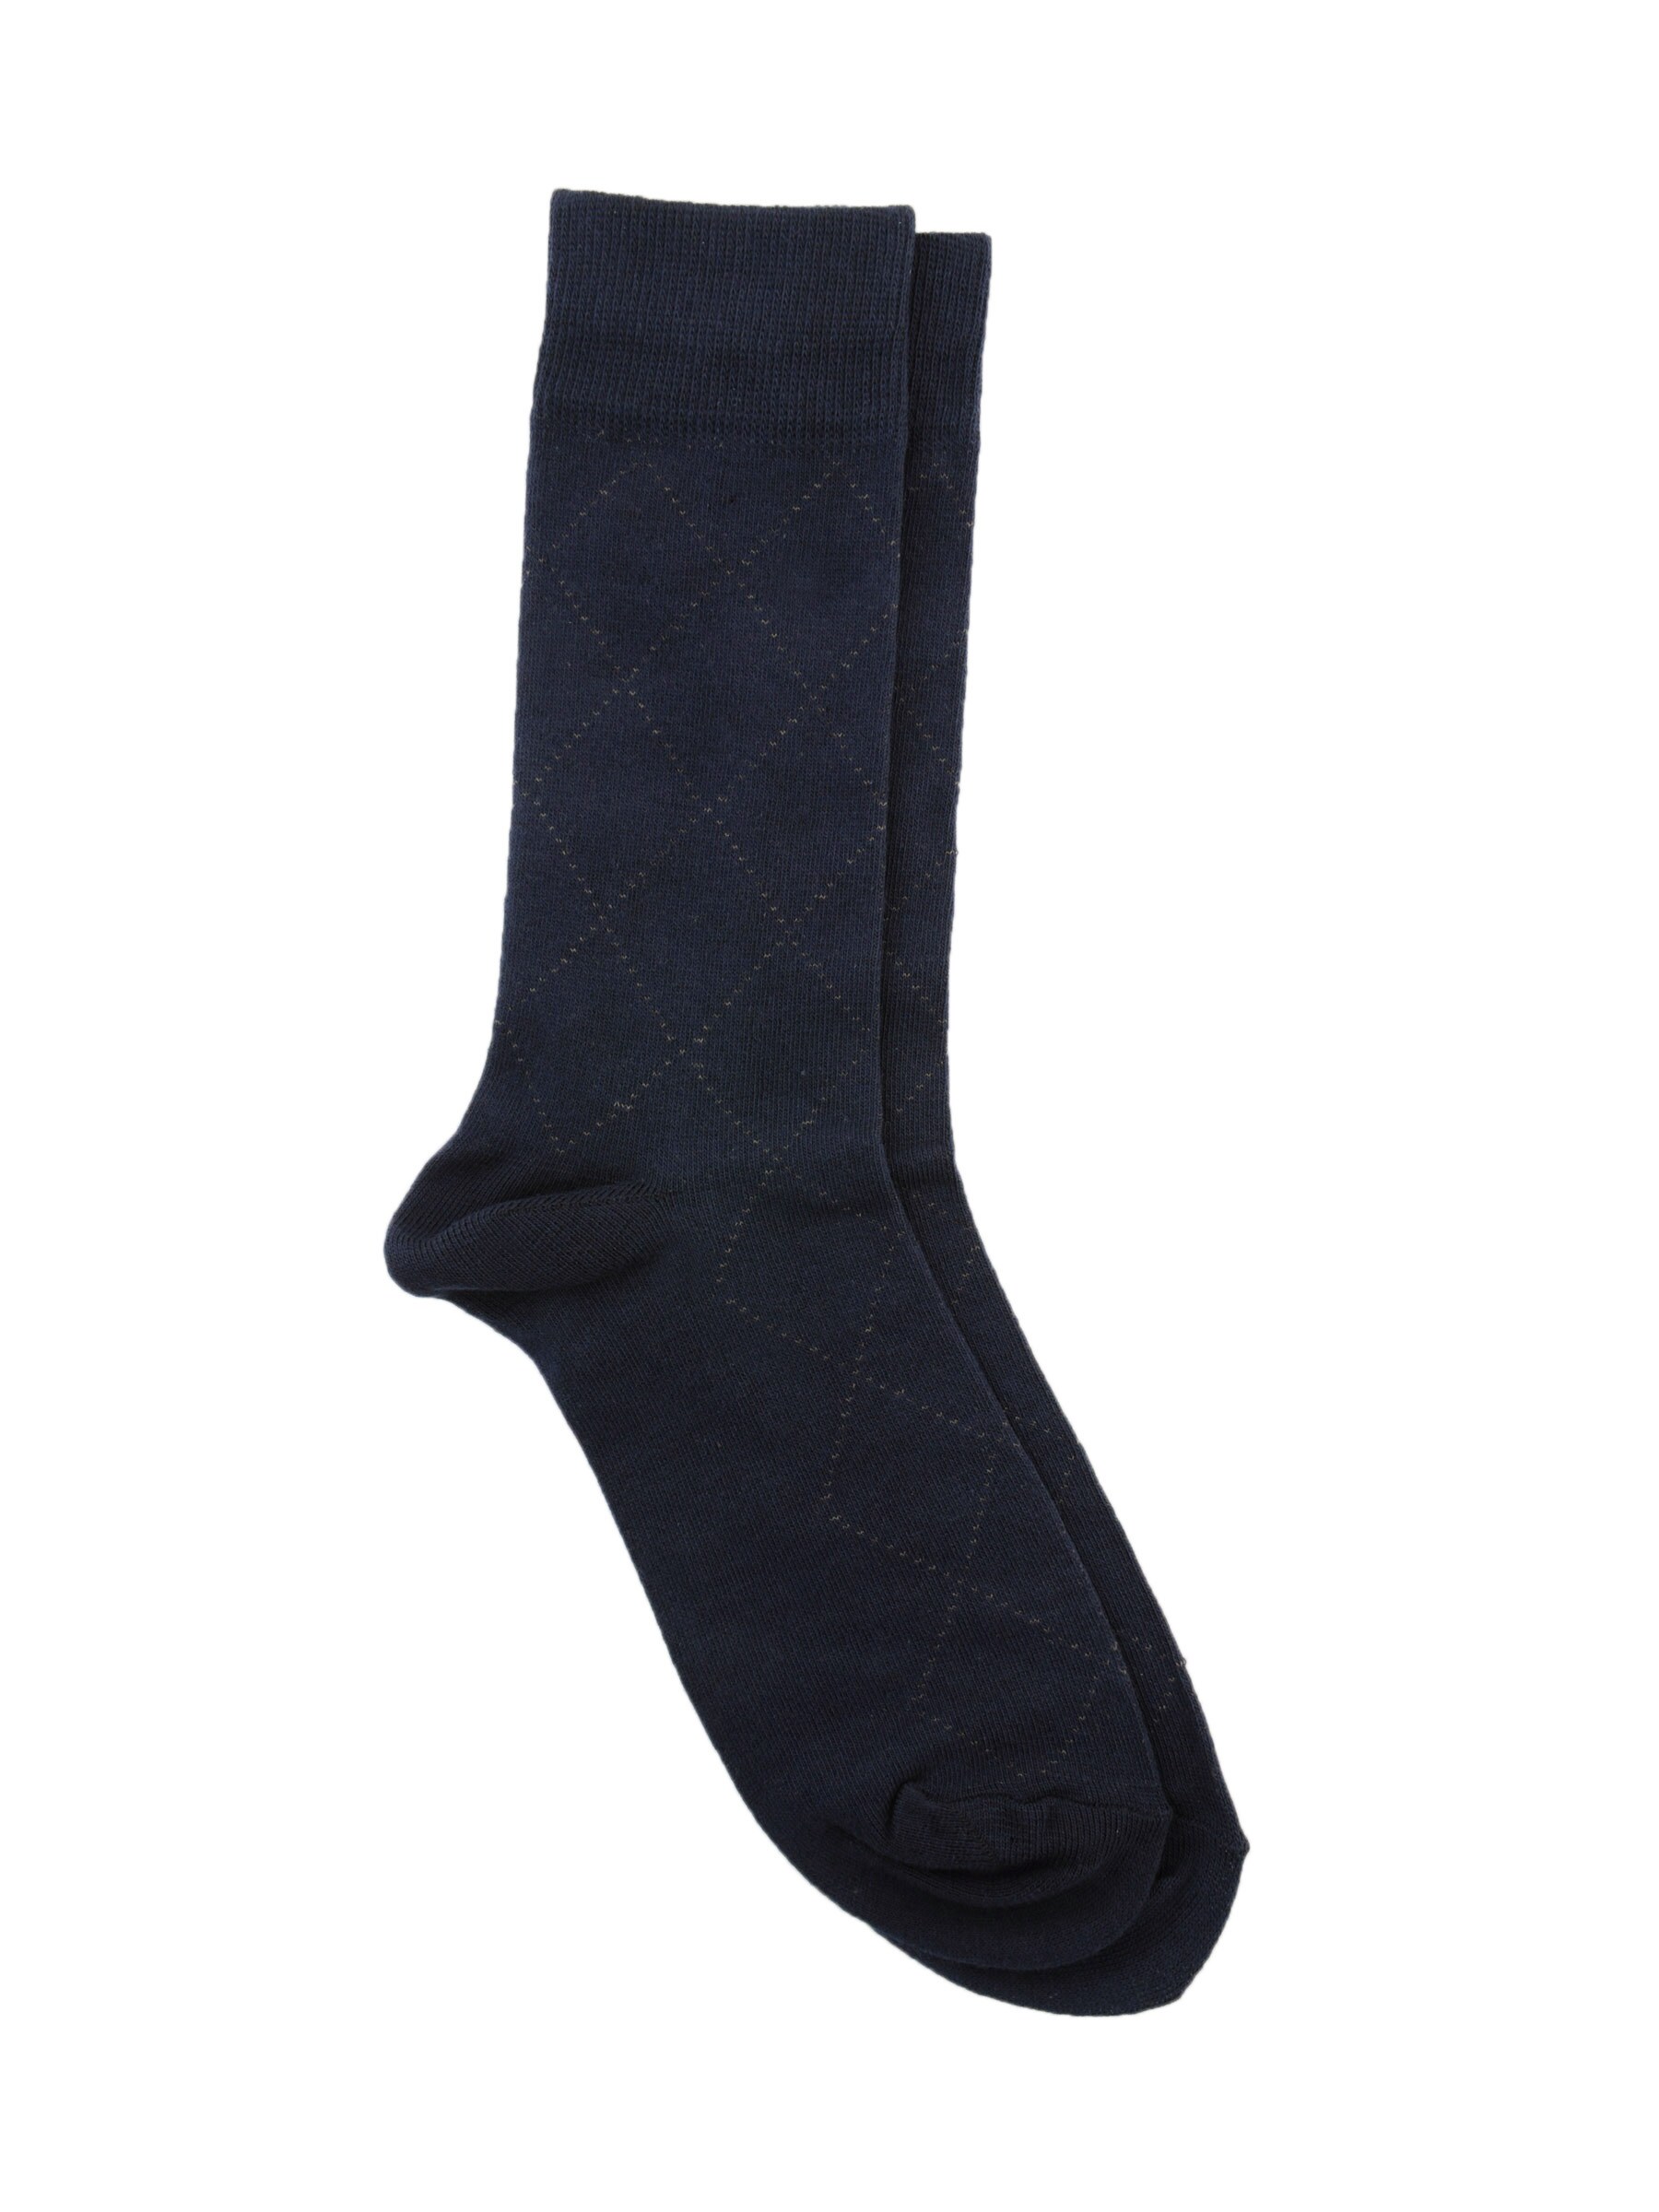 Reid & Taylor Men Solid Navy Blue Socks